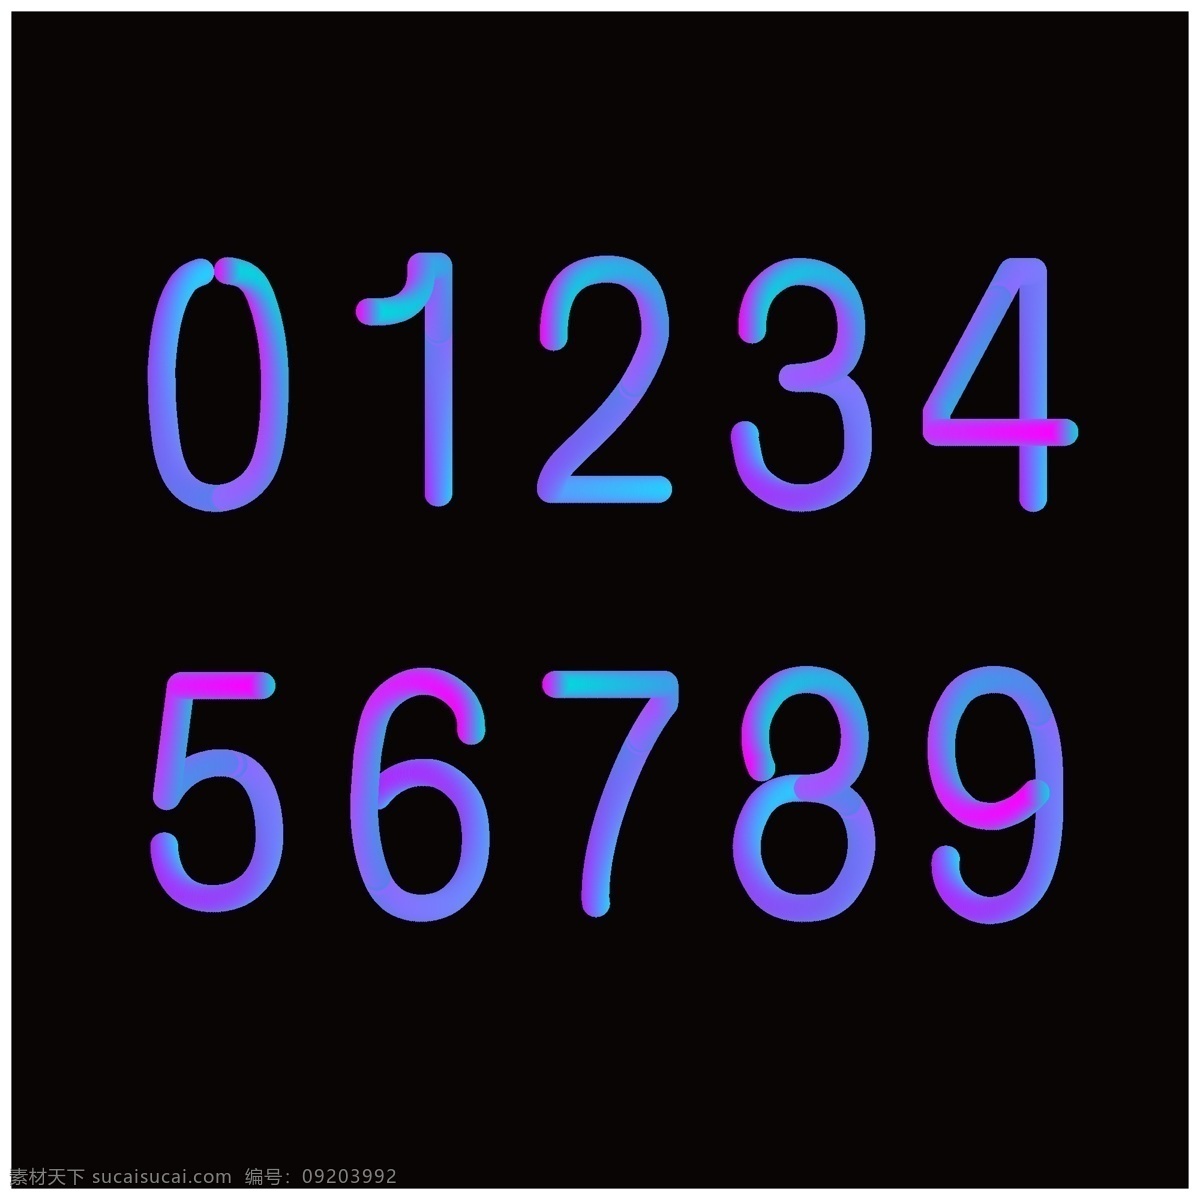 荧光数字 糖果数字 艺术数字 彩色数字 数字 艺术 渐变数字 倒计时数字 阿拉伯数字